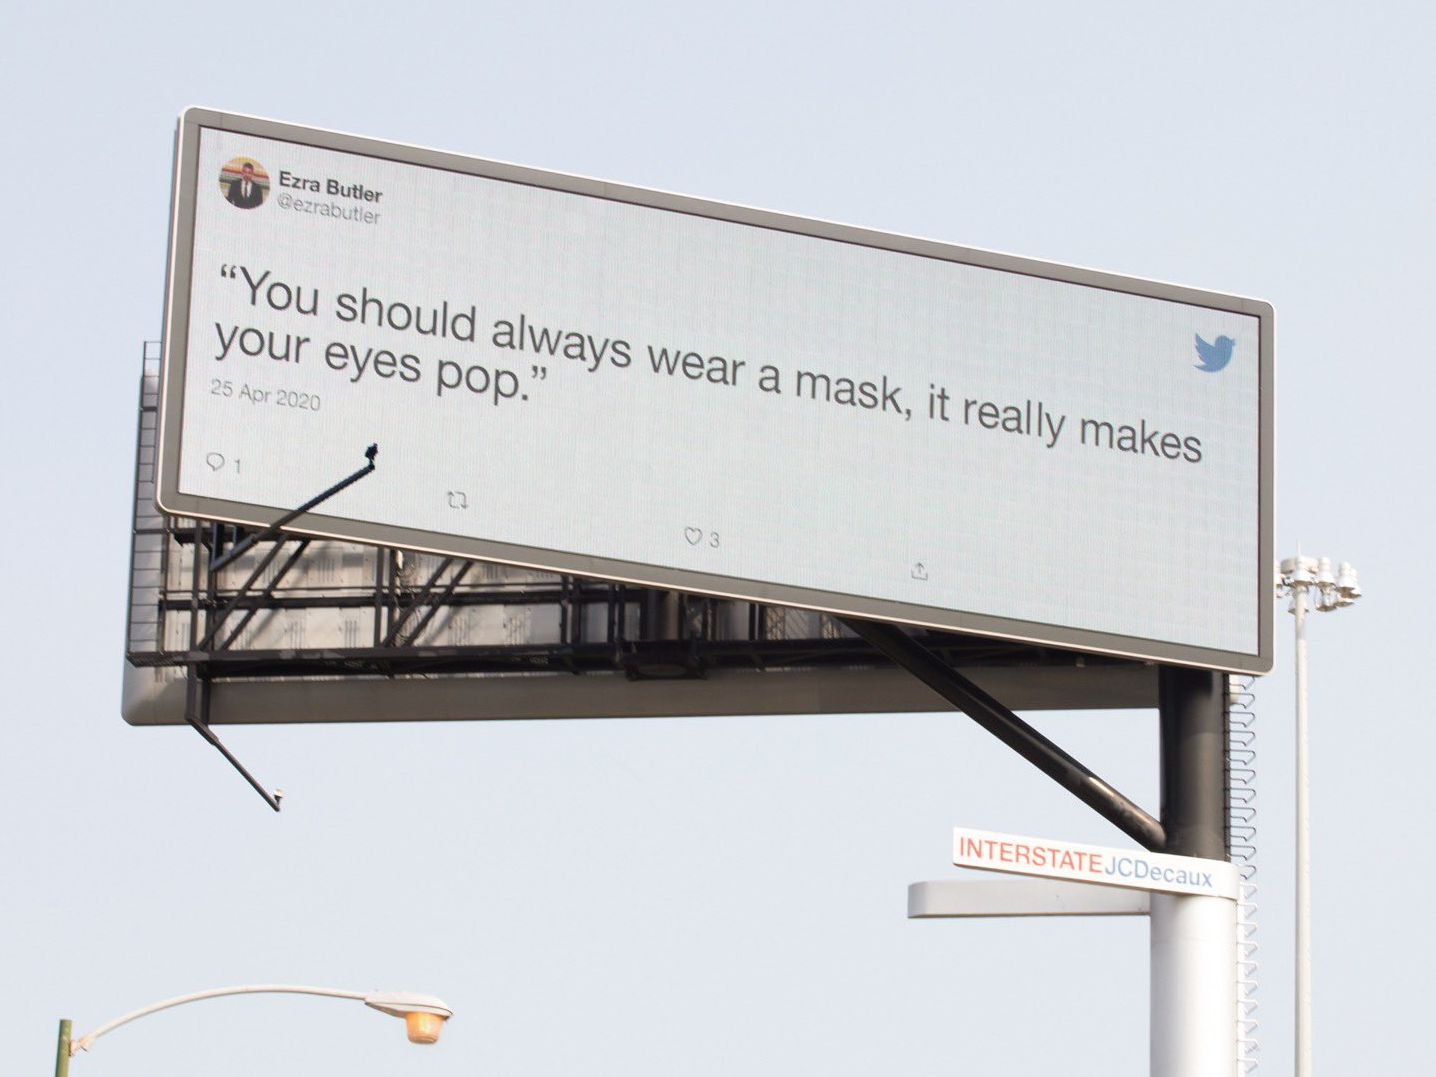 为了说服人们戴口罩，Twitter的推文广告又来了